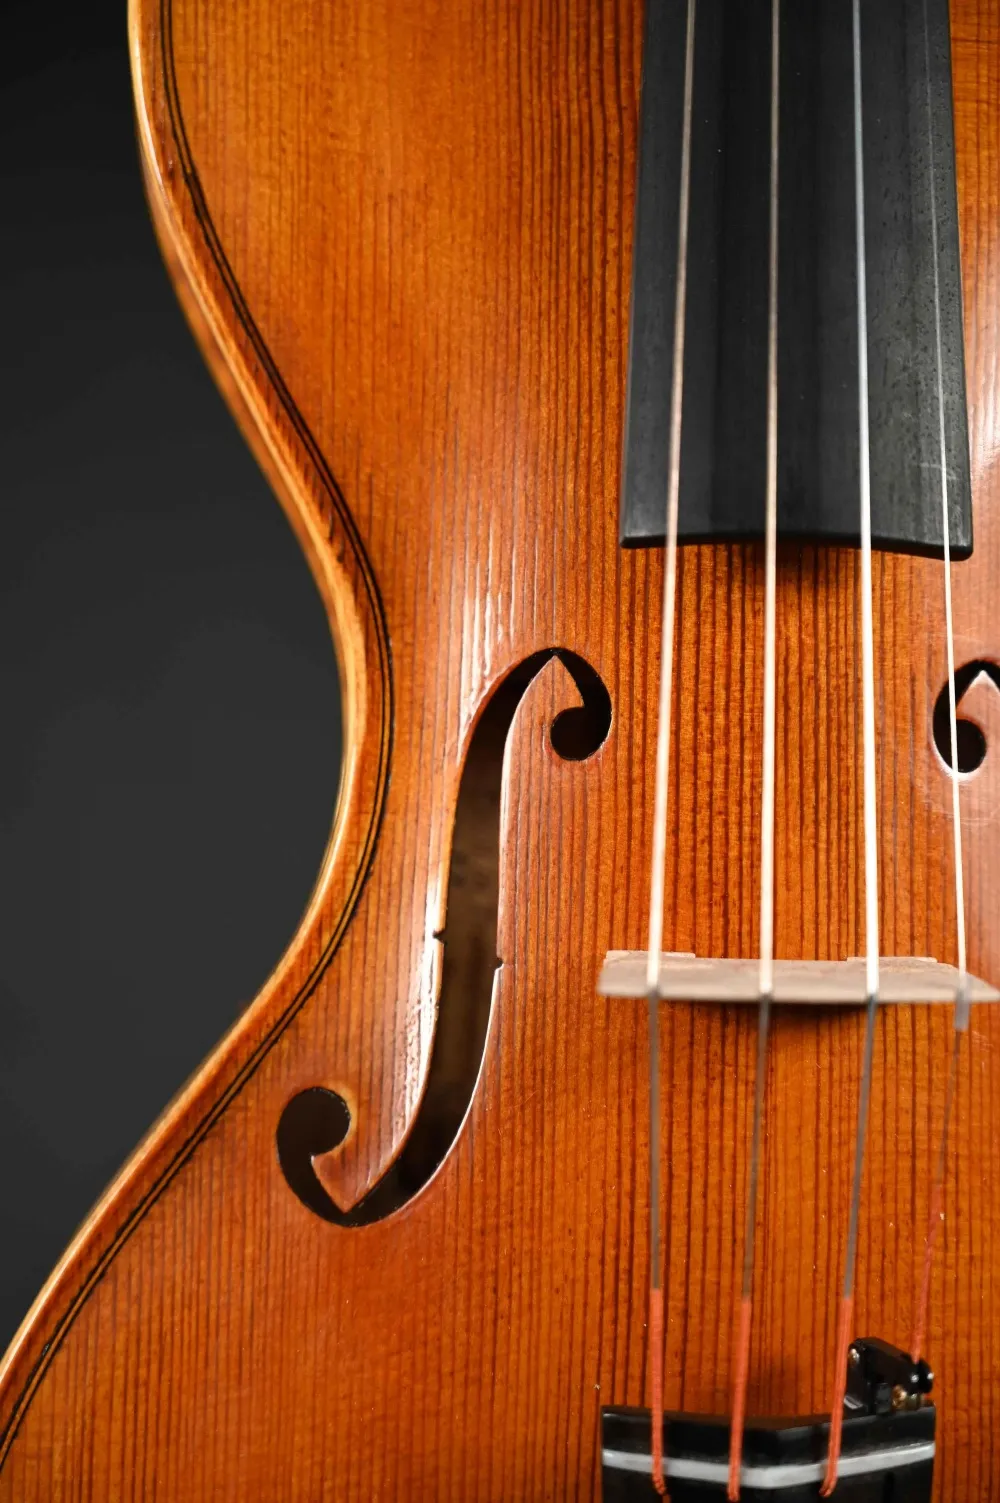 F-Loch-Detailansicht einer Simon Joseph Corneless Geige (Violine) Handarbeit 2022